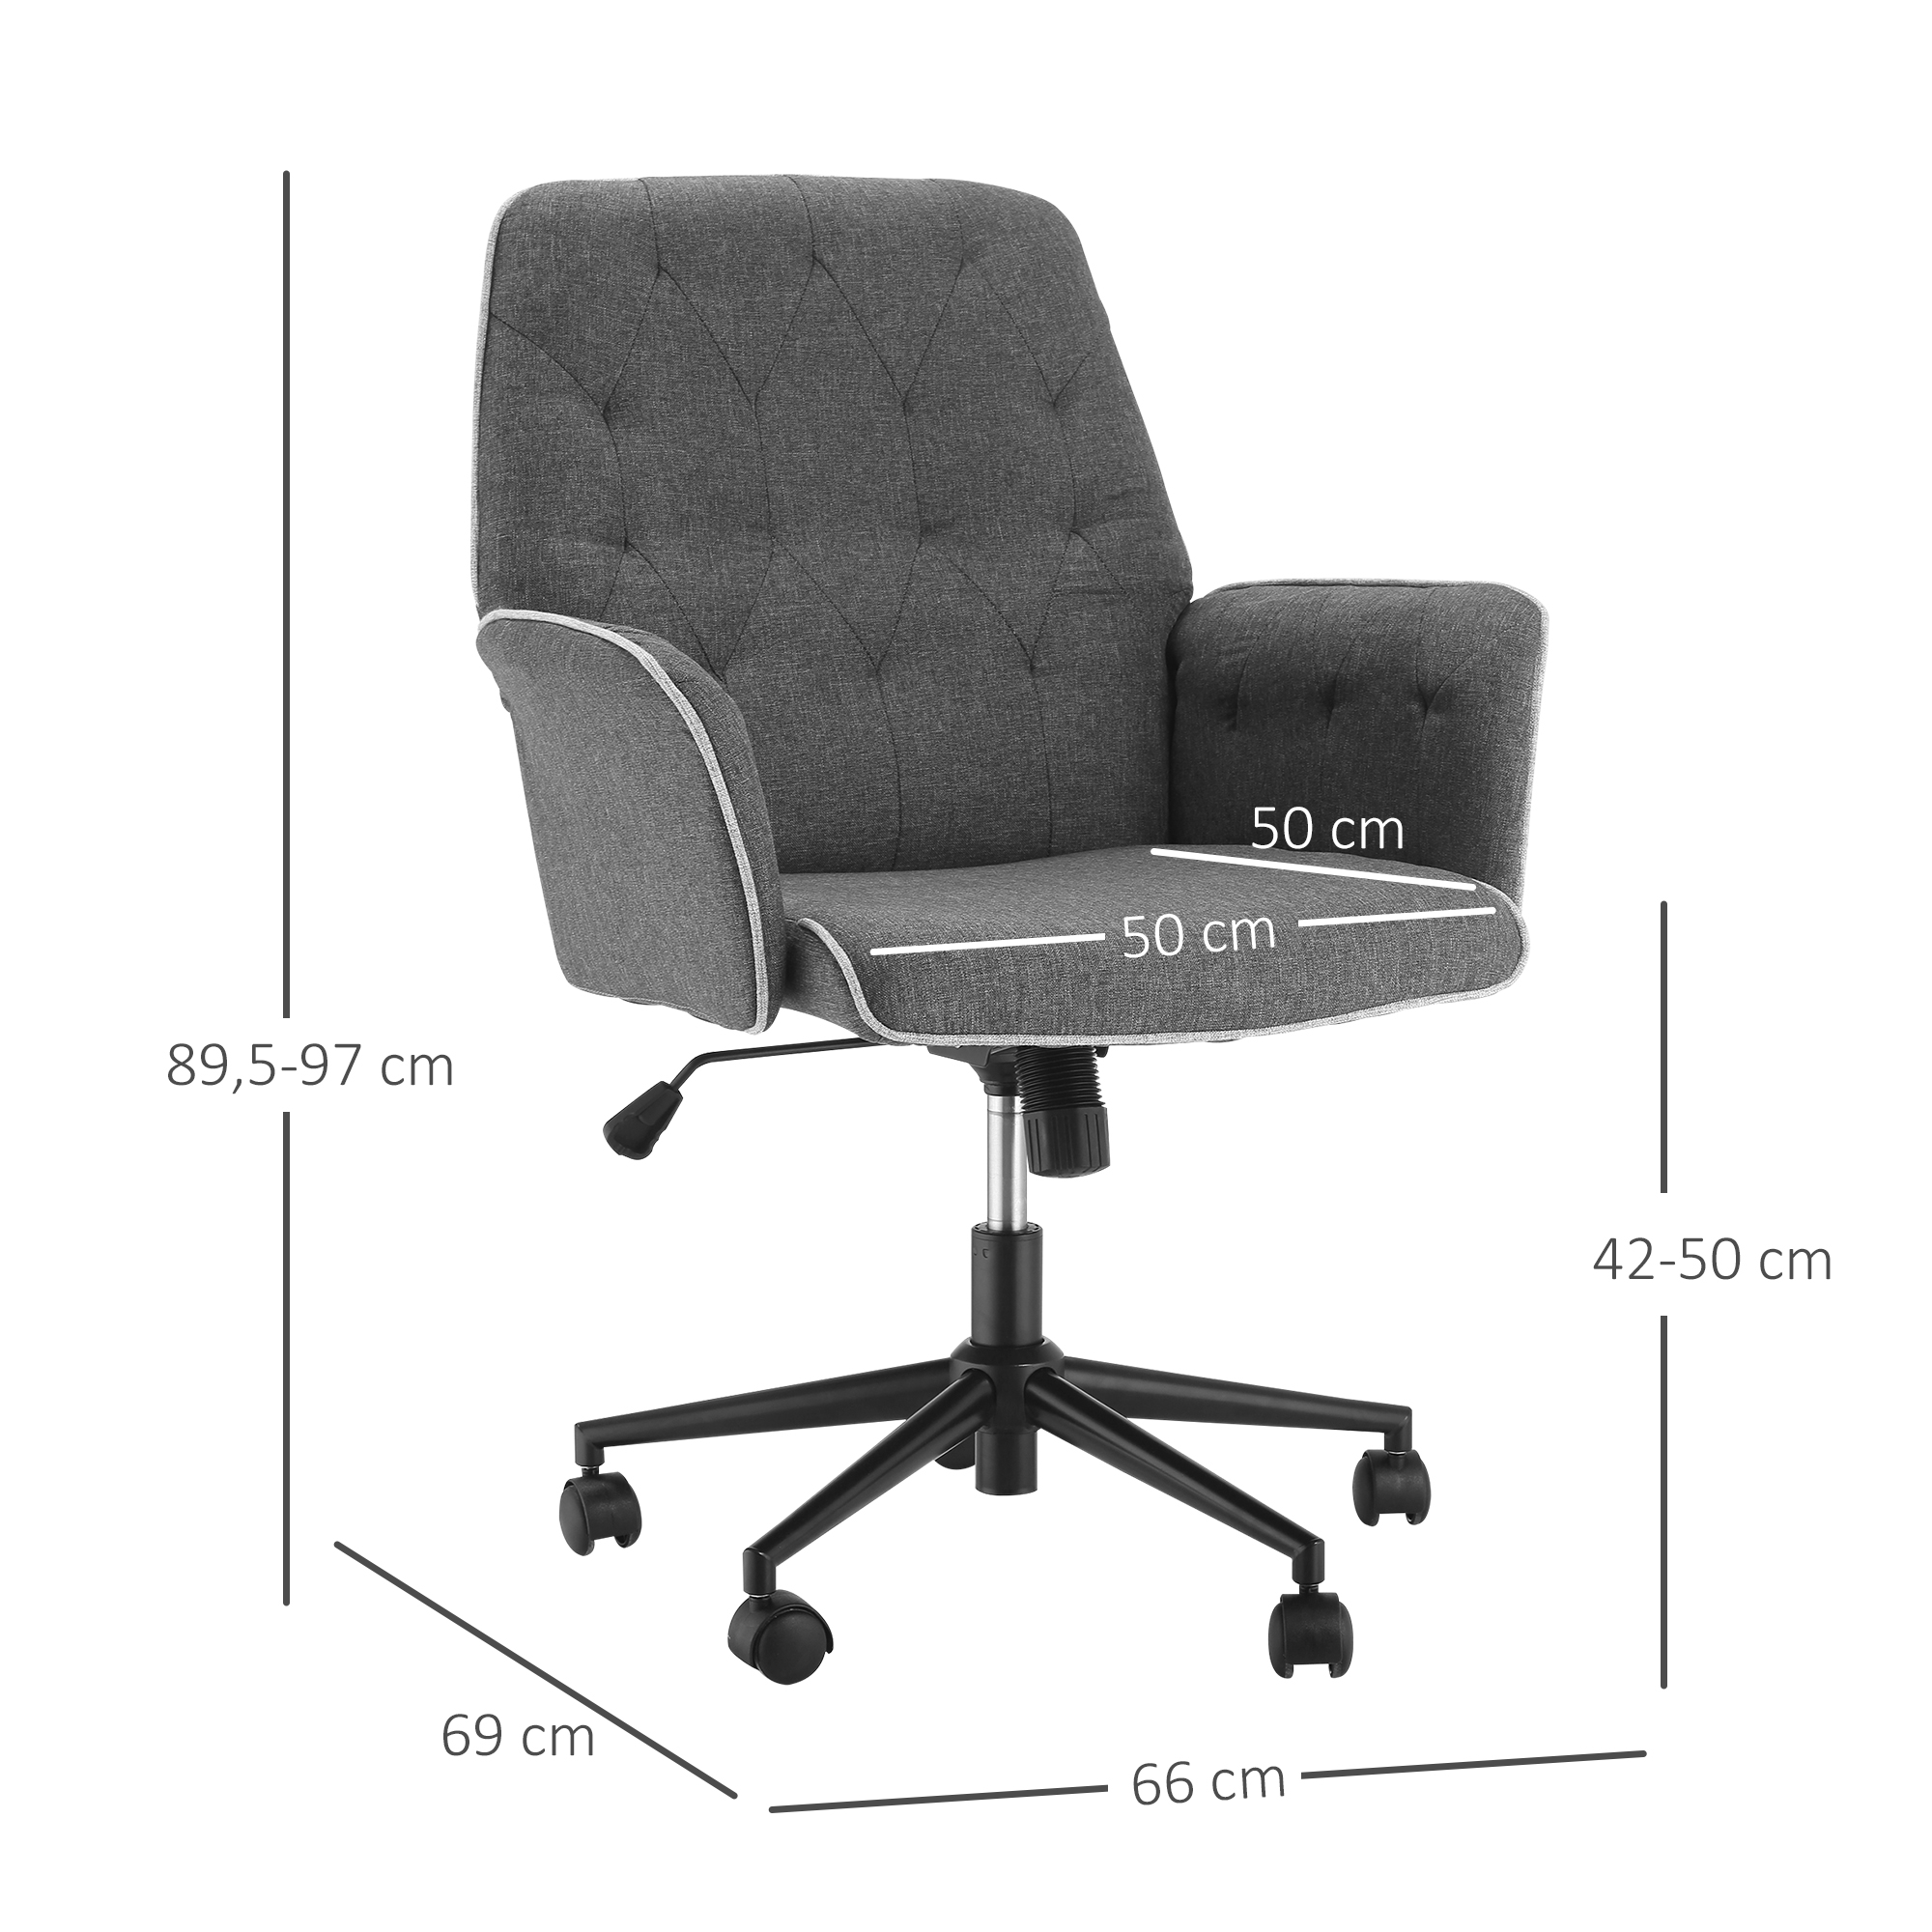 HOMCOM Bürostuhl mit x Norma24 69 Schaumstoff 66 cm 89,5-97 Drehstuhl Schreibtischstuhl Wippfunktion x Home-Office-Stuhl ergonomisch 360°-Drehräder Dunkelgrau | höhenverstellbarer